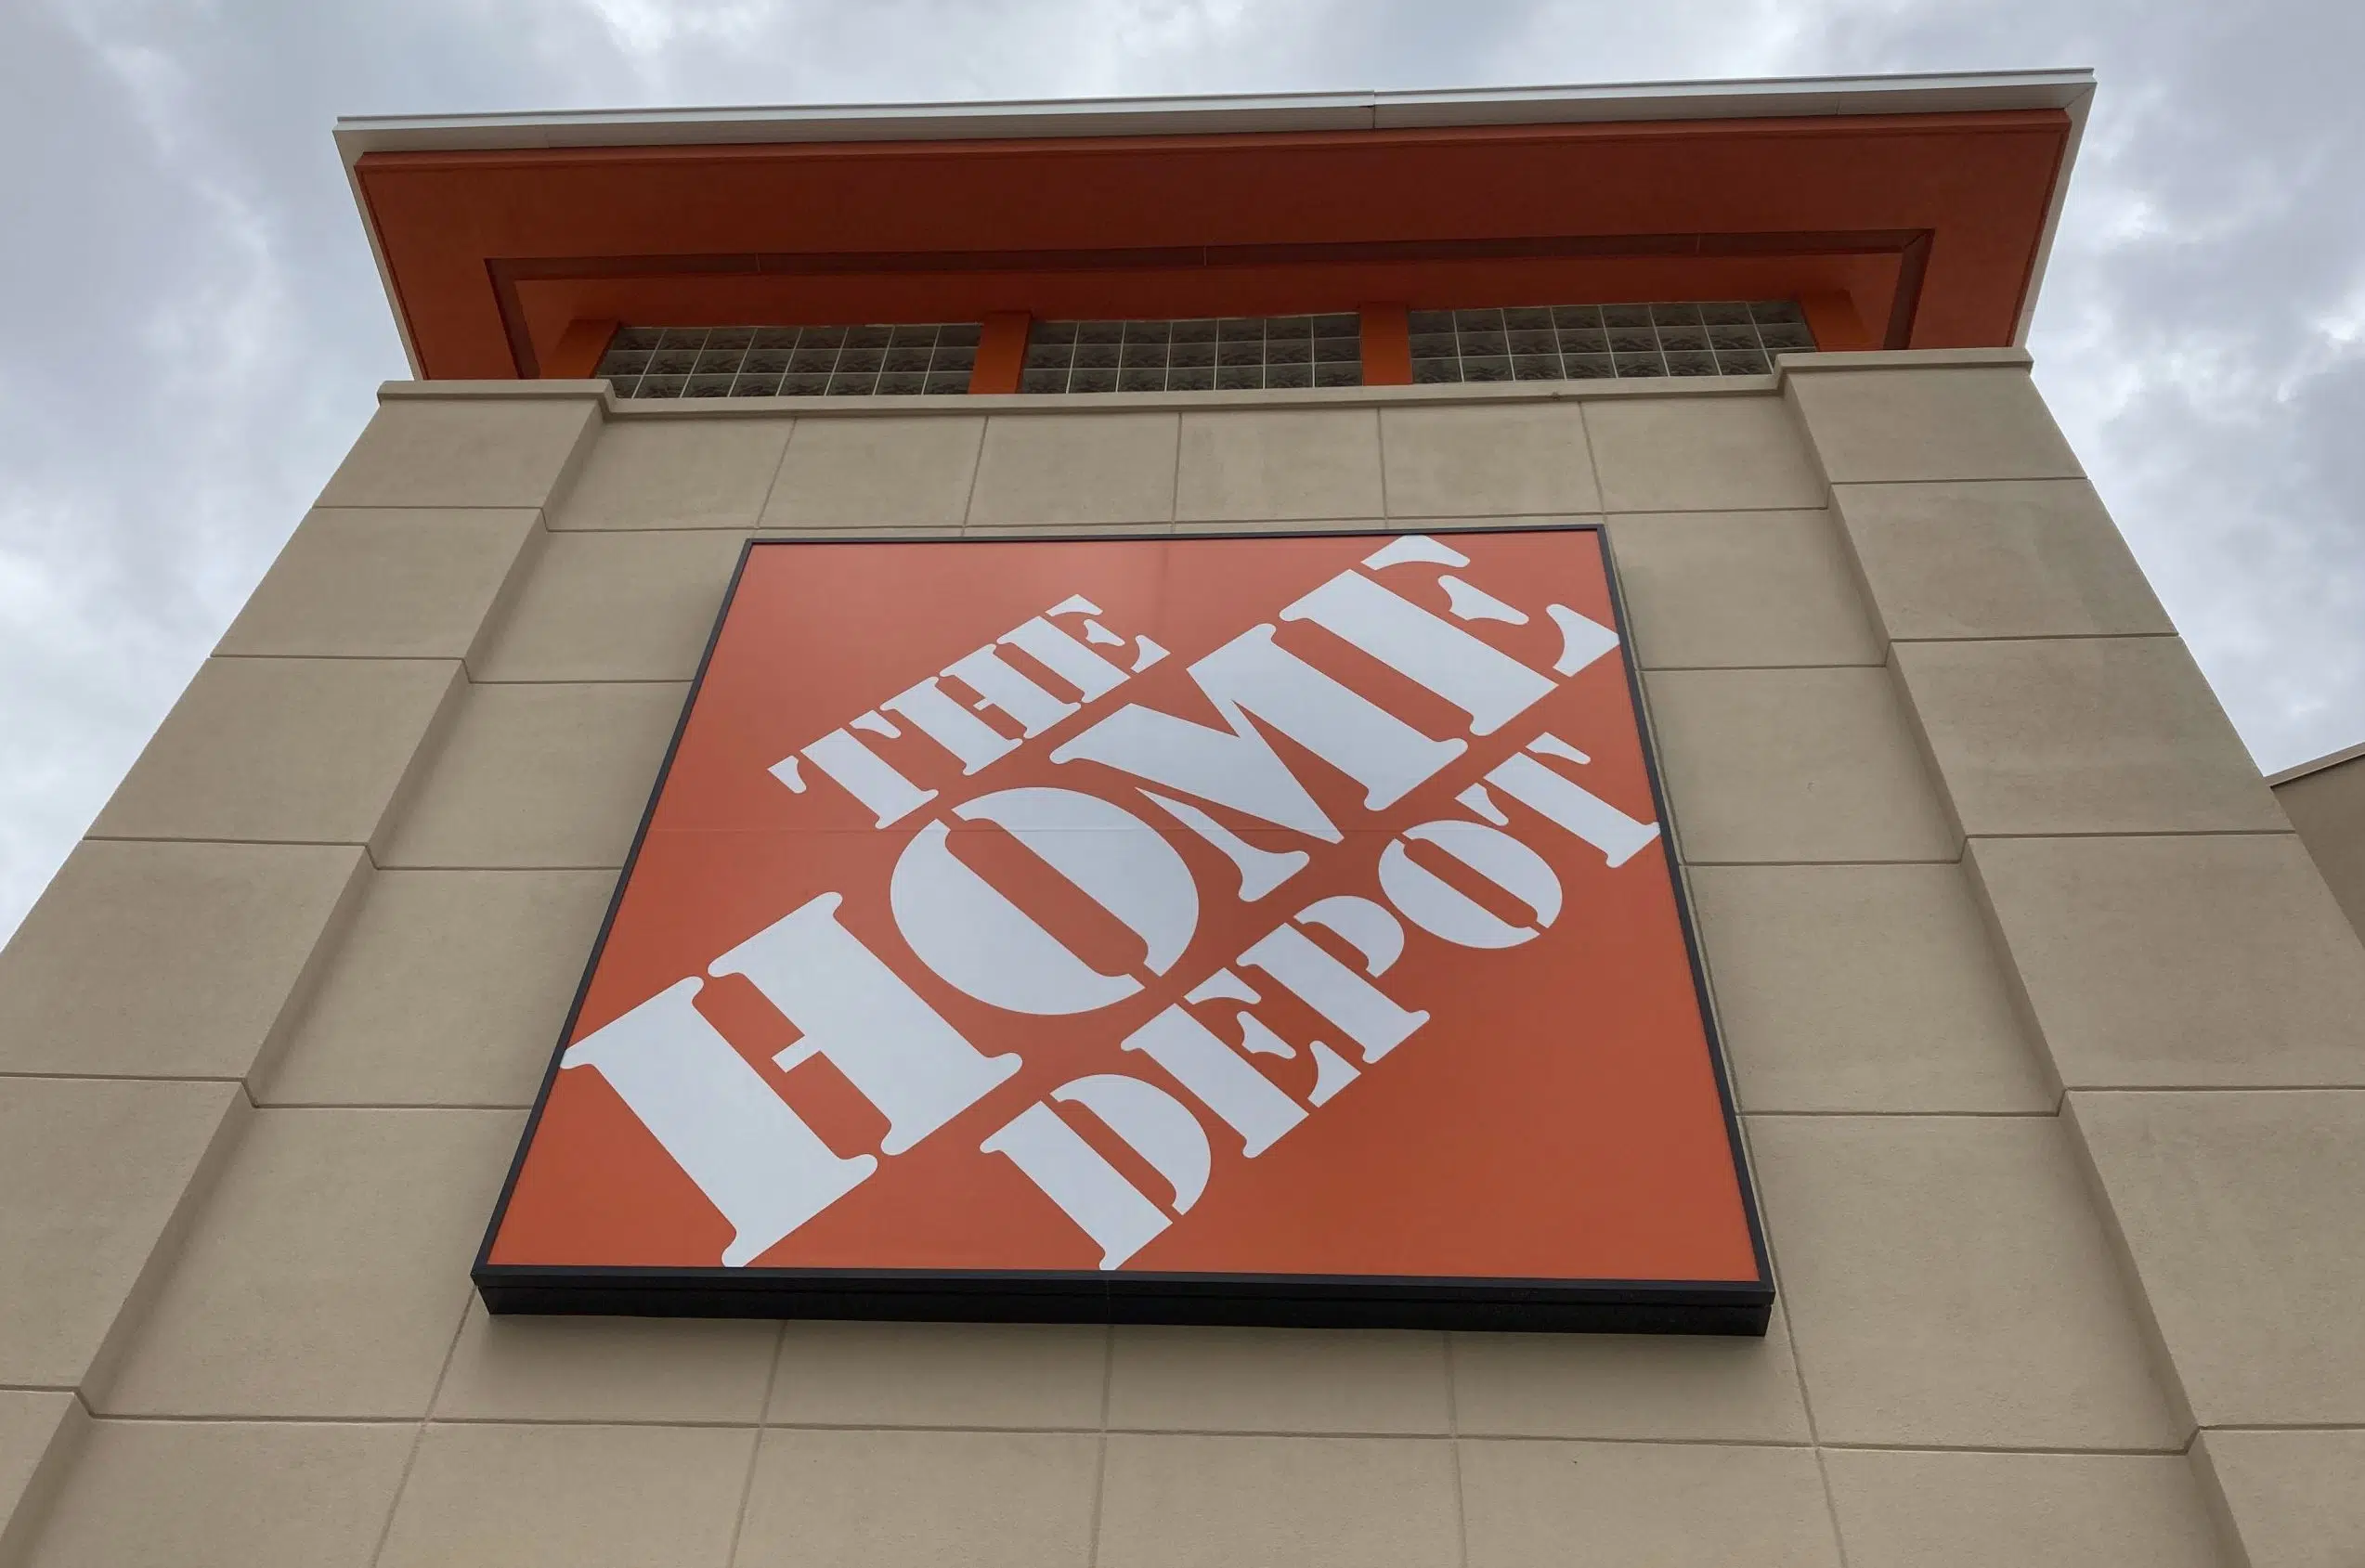 Merchant files class-action lawsuit against Home Depot